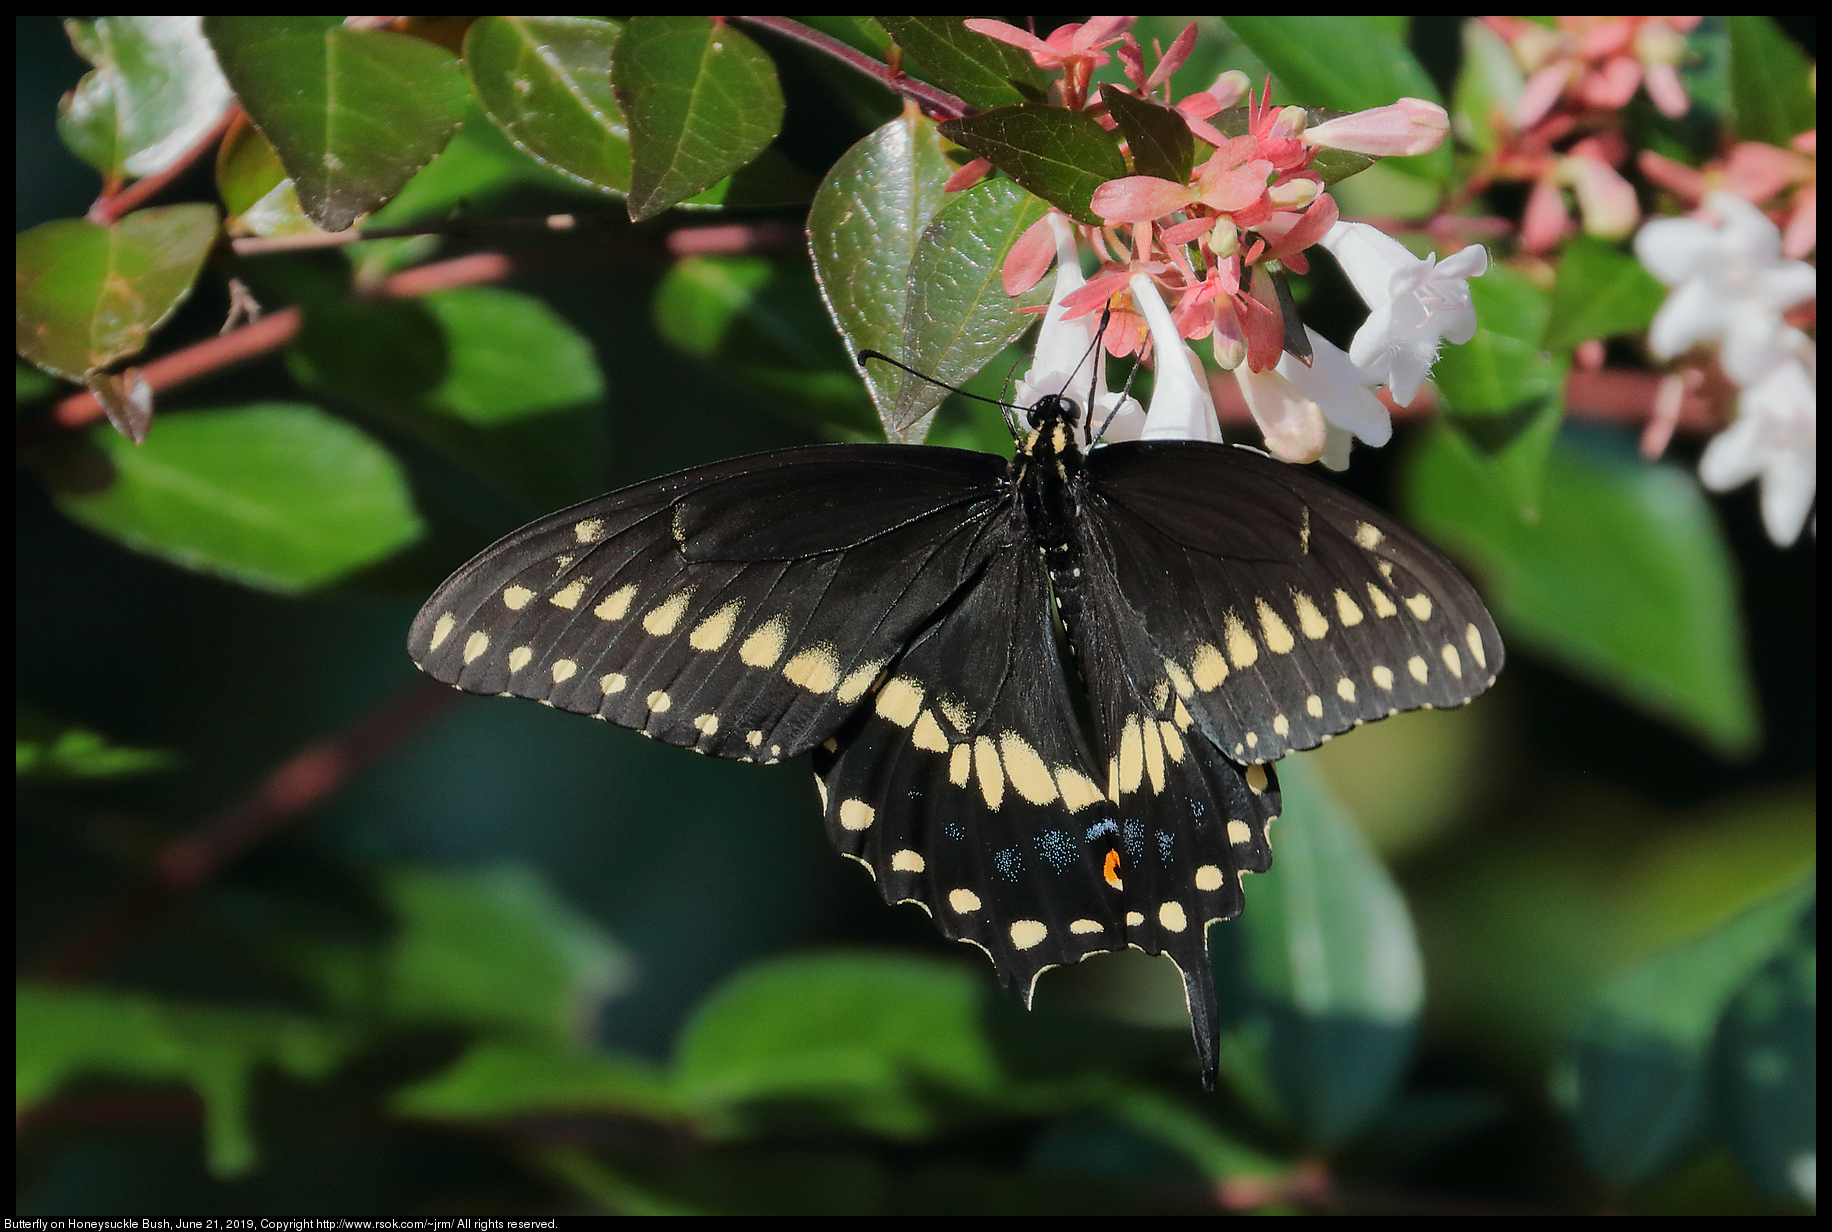 Butterfly on Honeysuckle Bush, June 21, 2019